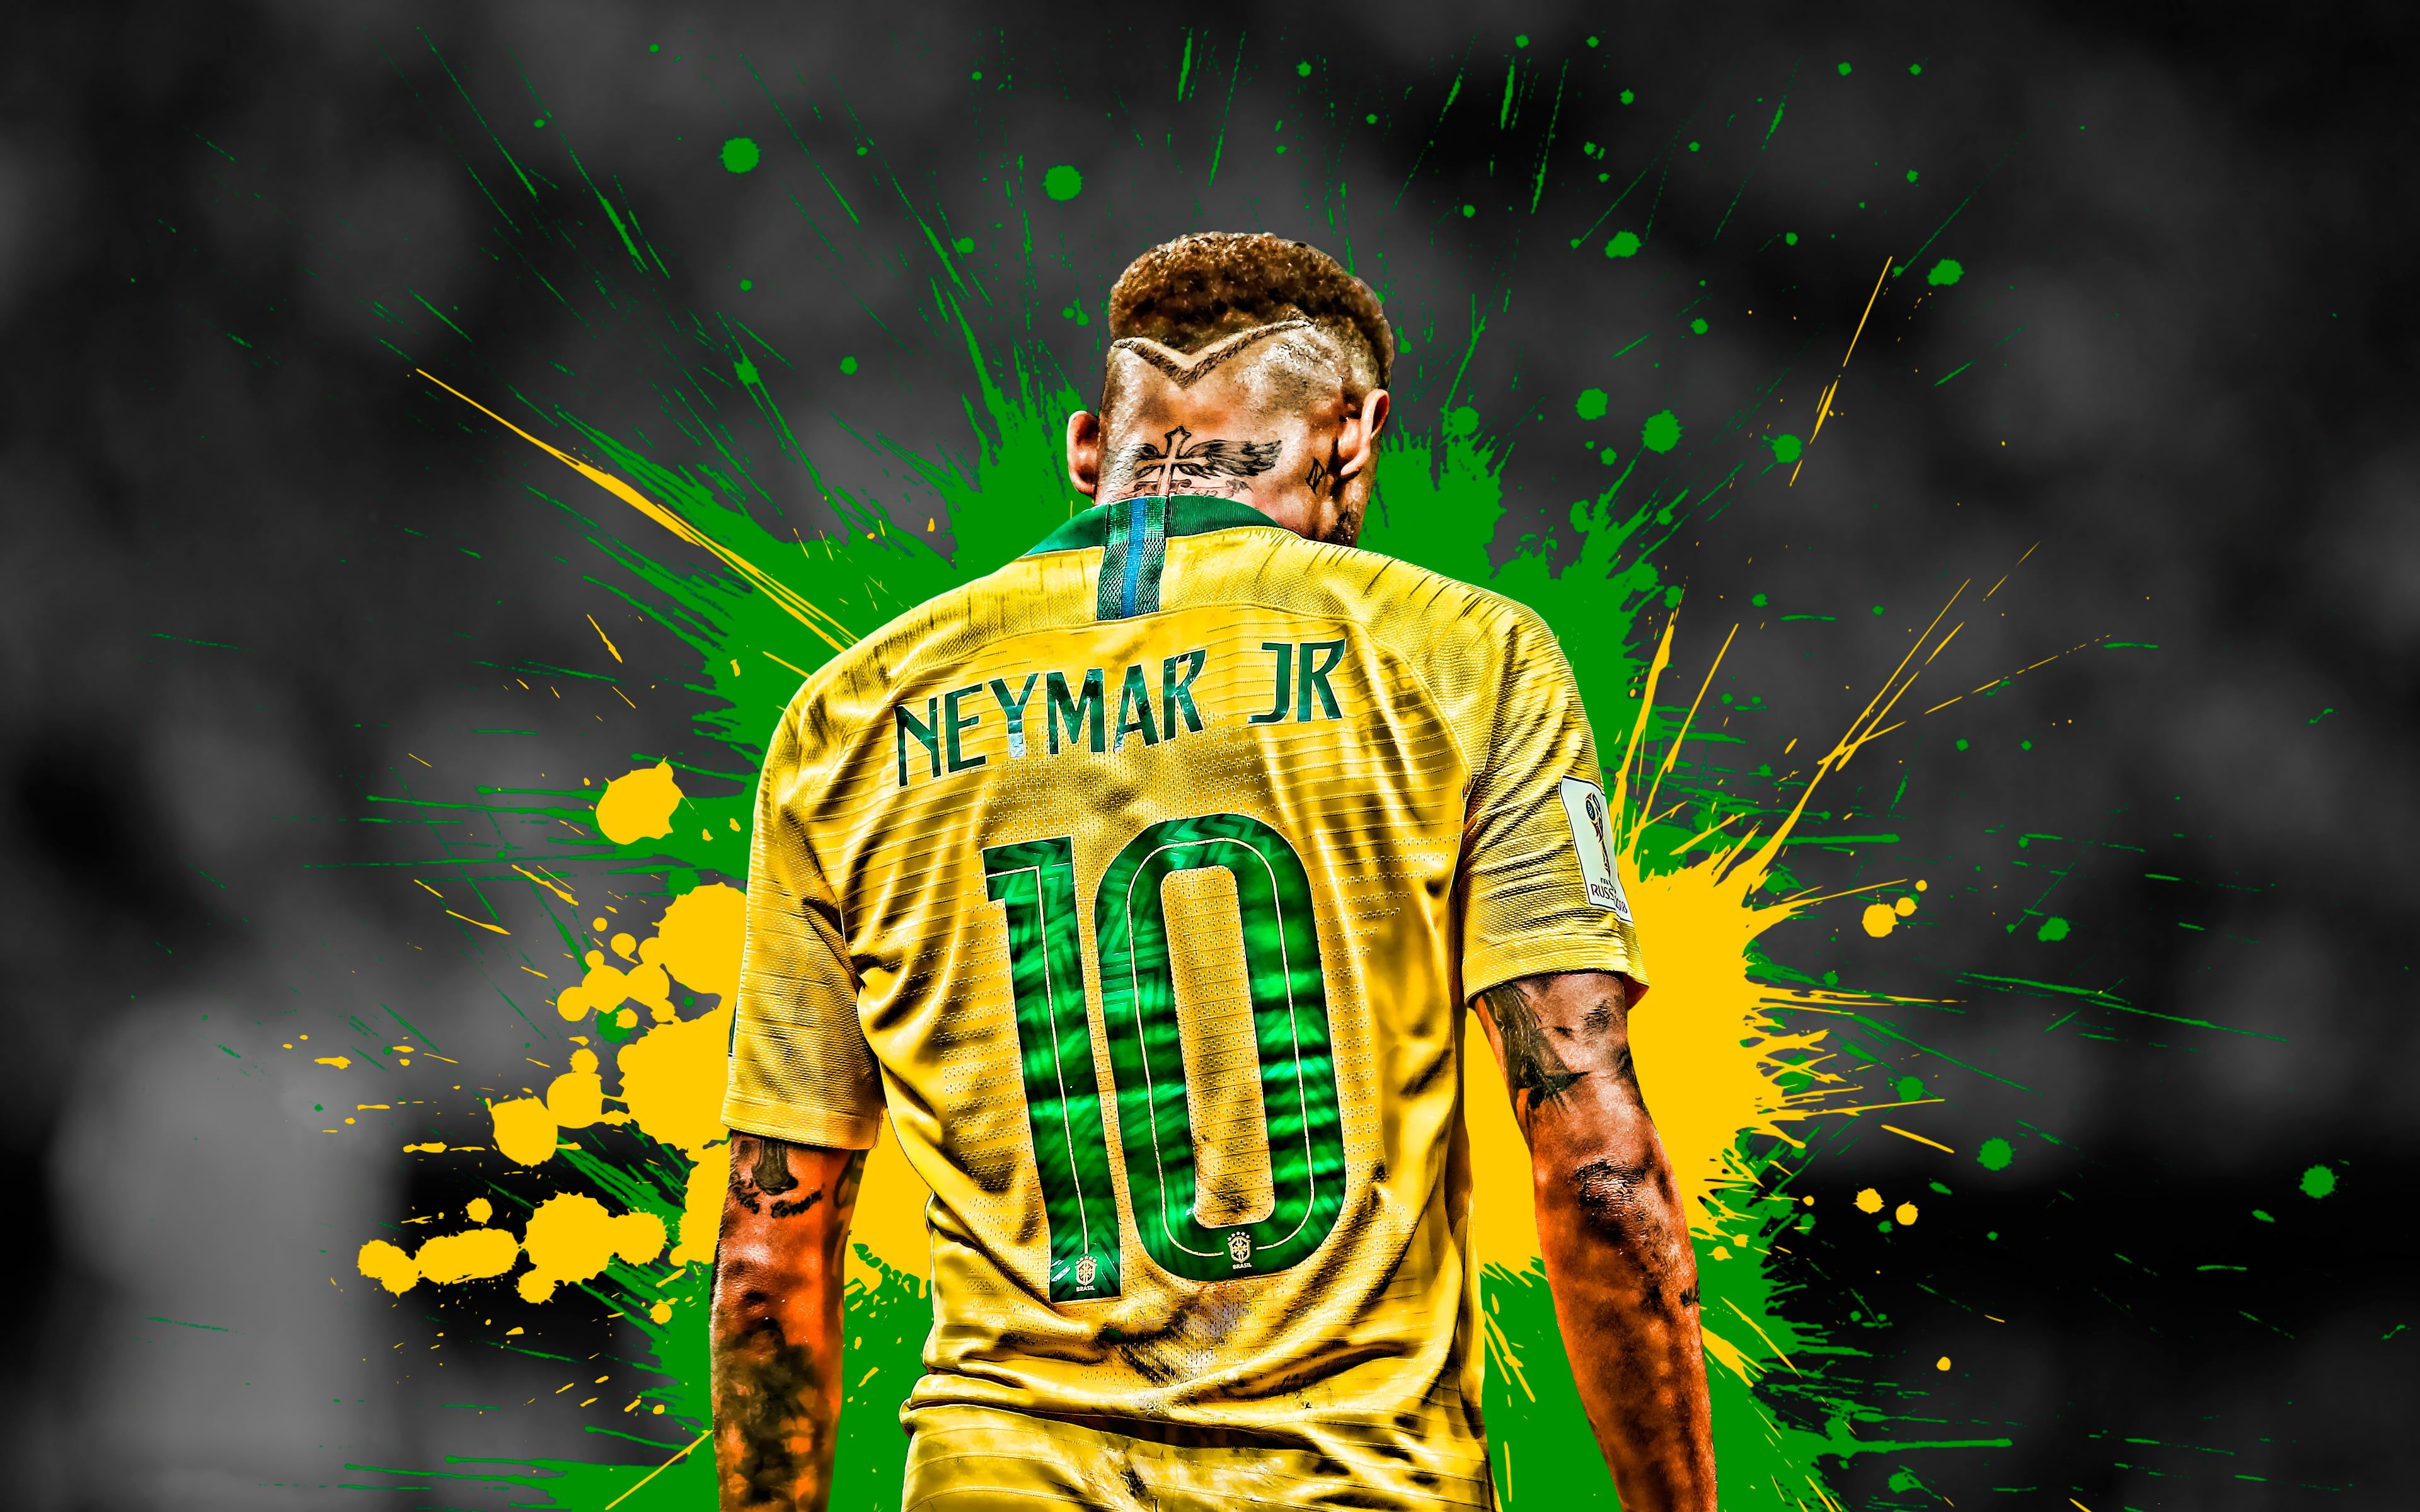 Soccer #Neymar #Brazilian #Footballer K #wallpaper #hdwallpaper #desktop. Neymar, Neymar jr, Neymar wallpaper